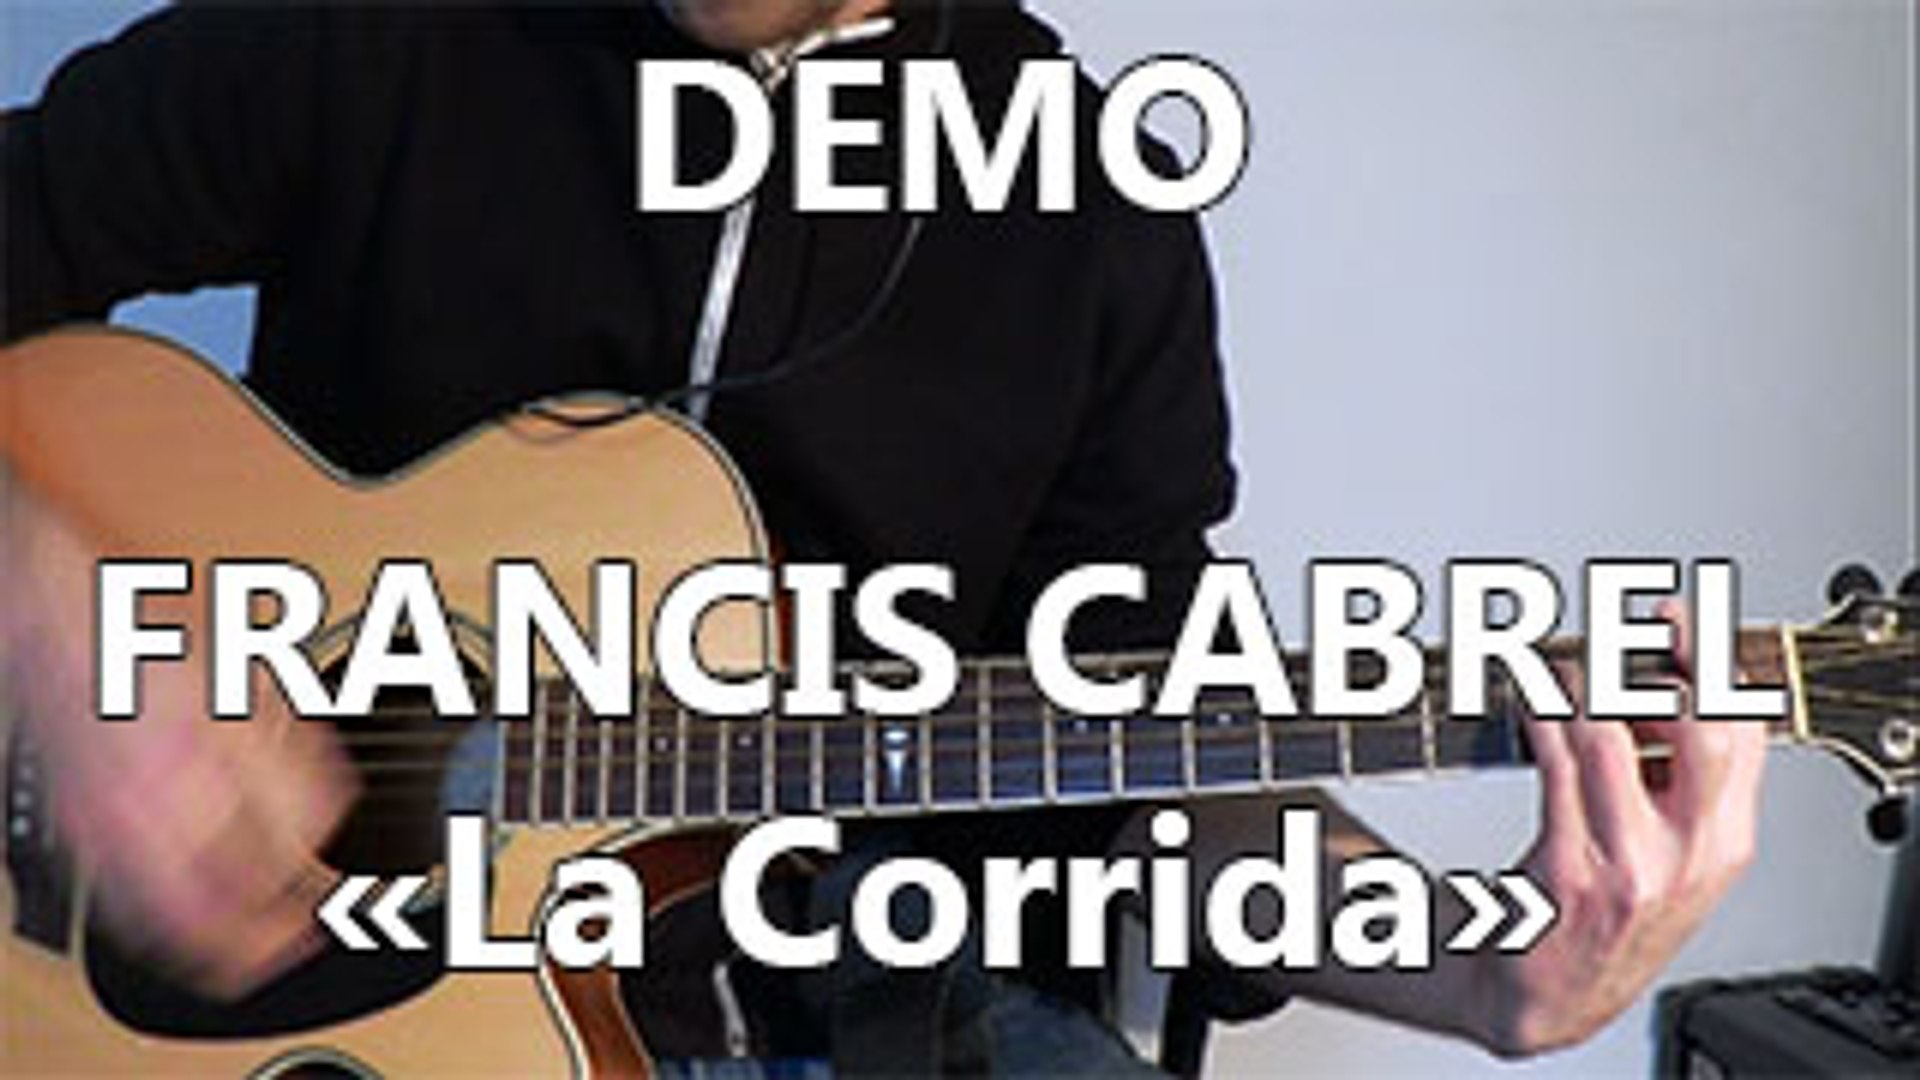 Francis Cabrel - La Corrida - DEMO Guitare - Vidéo Dailymotion